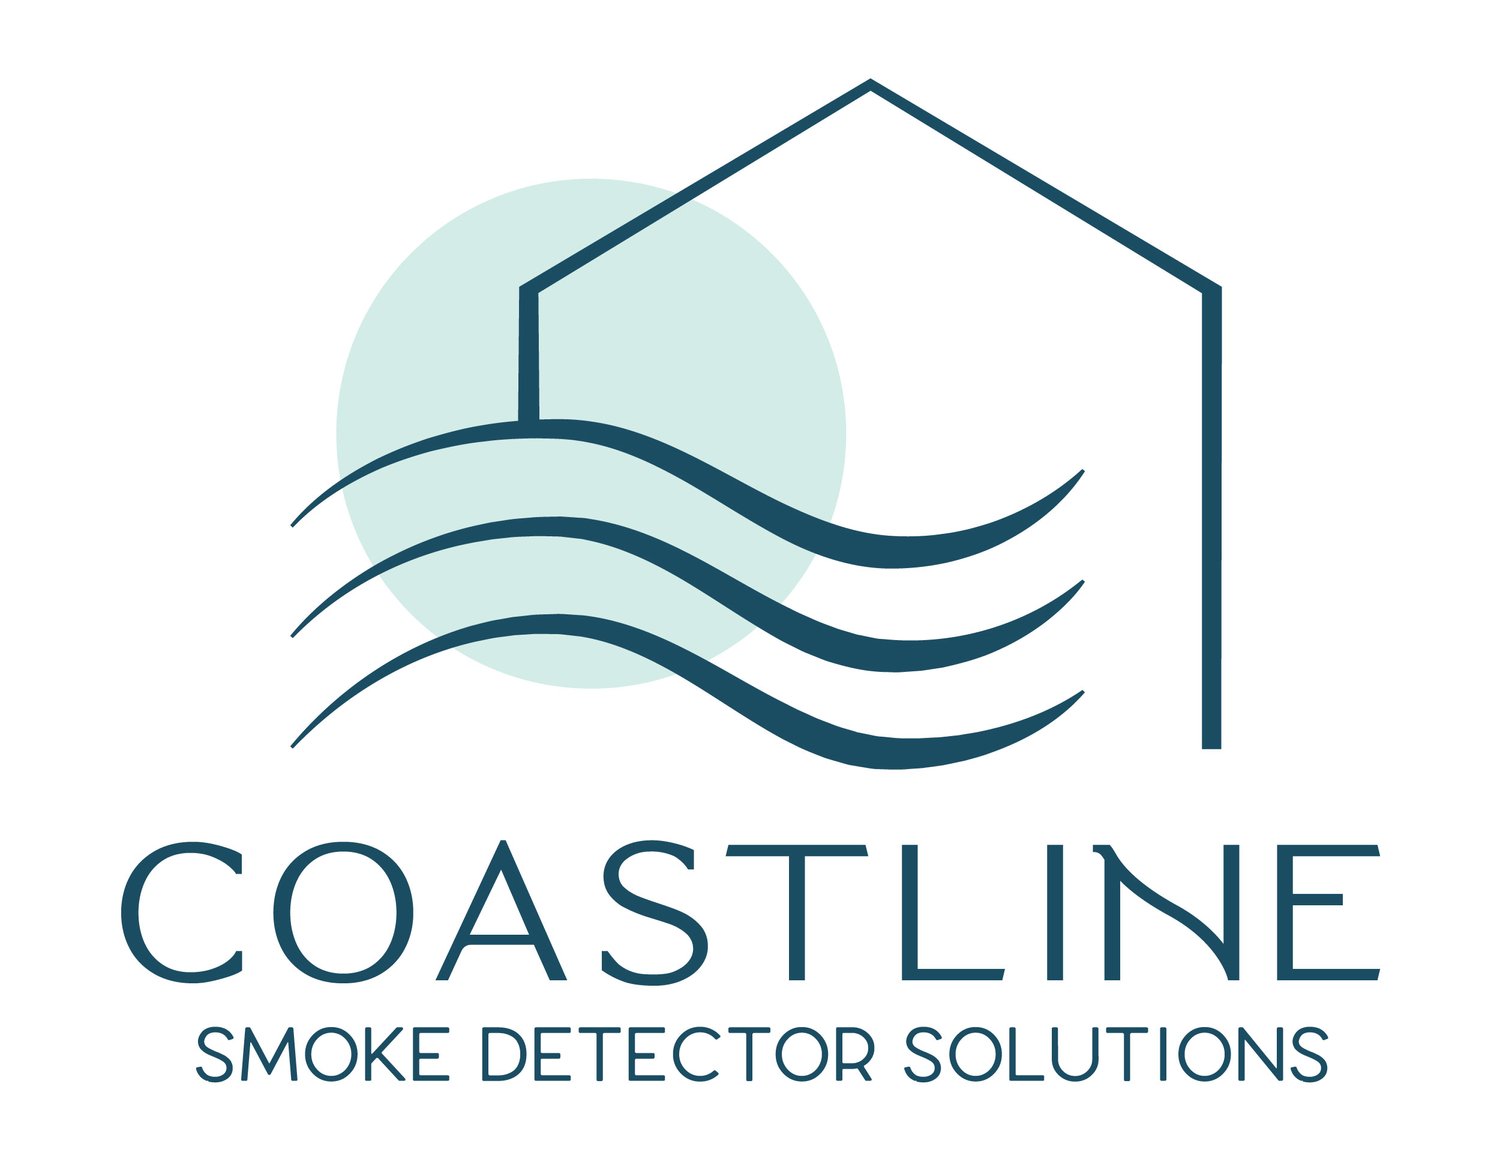 Coastline Smoke Detector Solutions